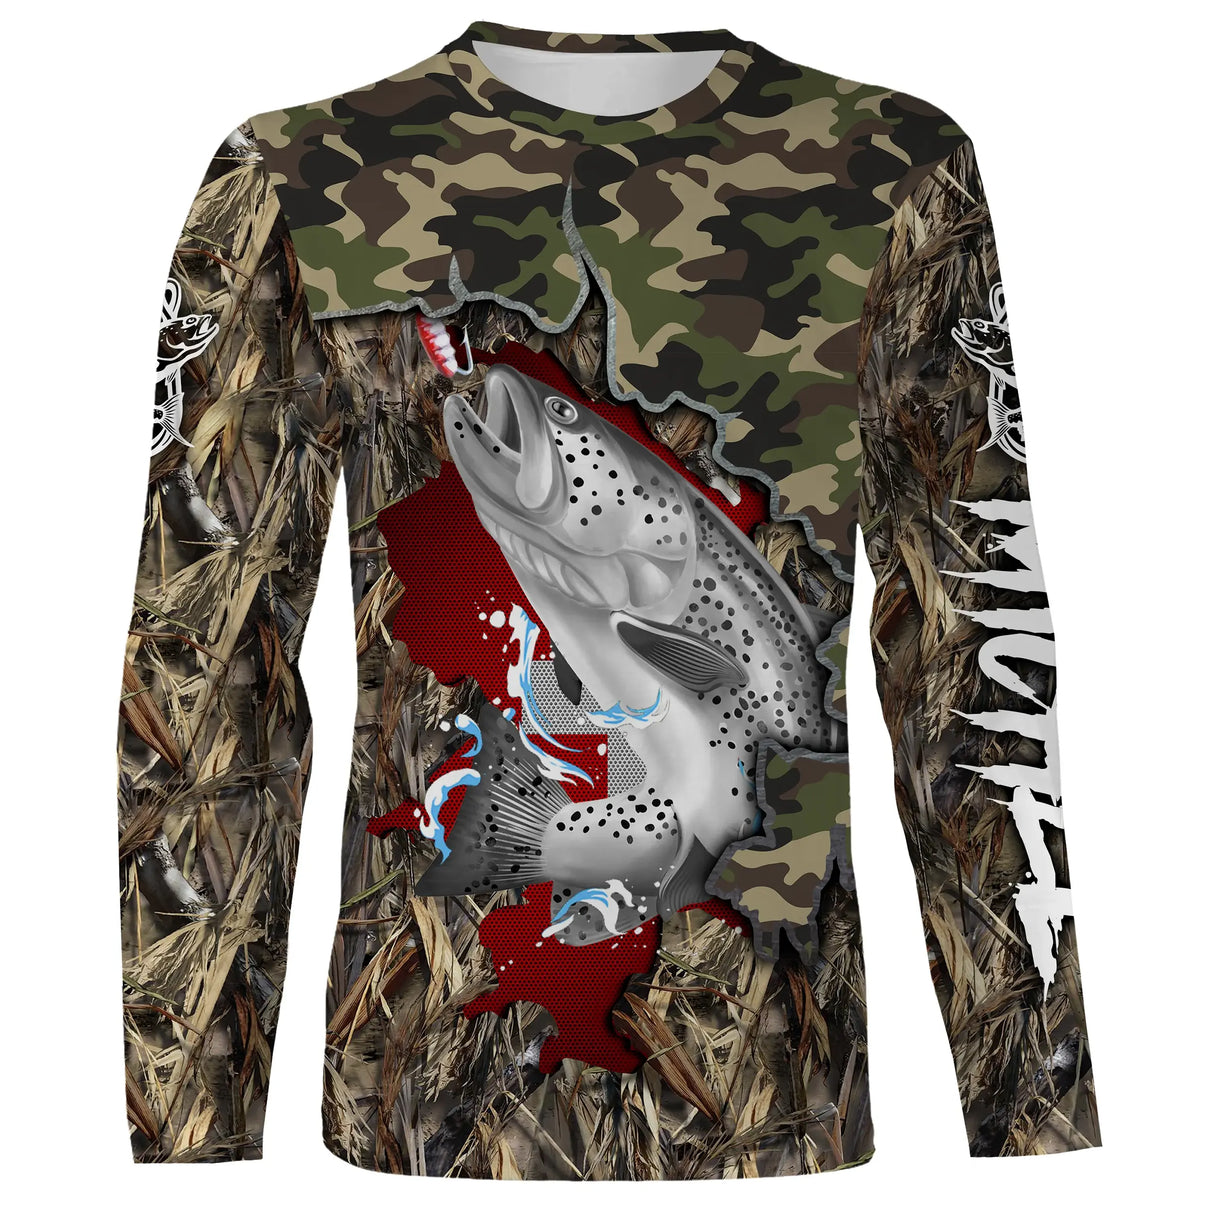 T-Shirt de Pêche Camouflage avec Truite et Drapeau Suisse - Style Unique pour Pêcheurs Passionnés - CT19072213 T-shirt All Over Manches Longues Unisexe